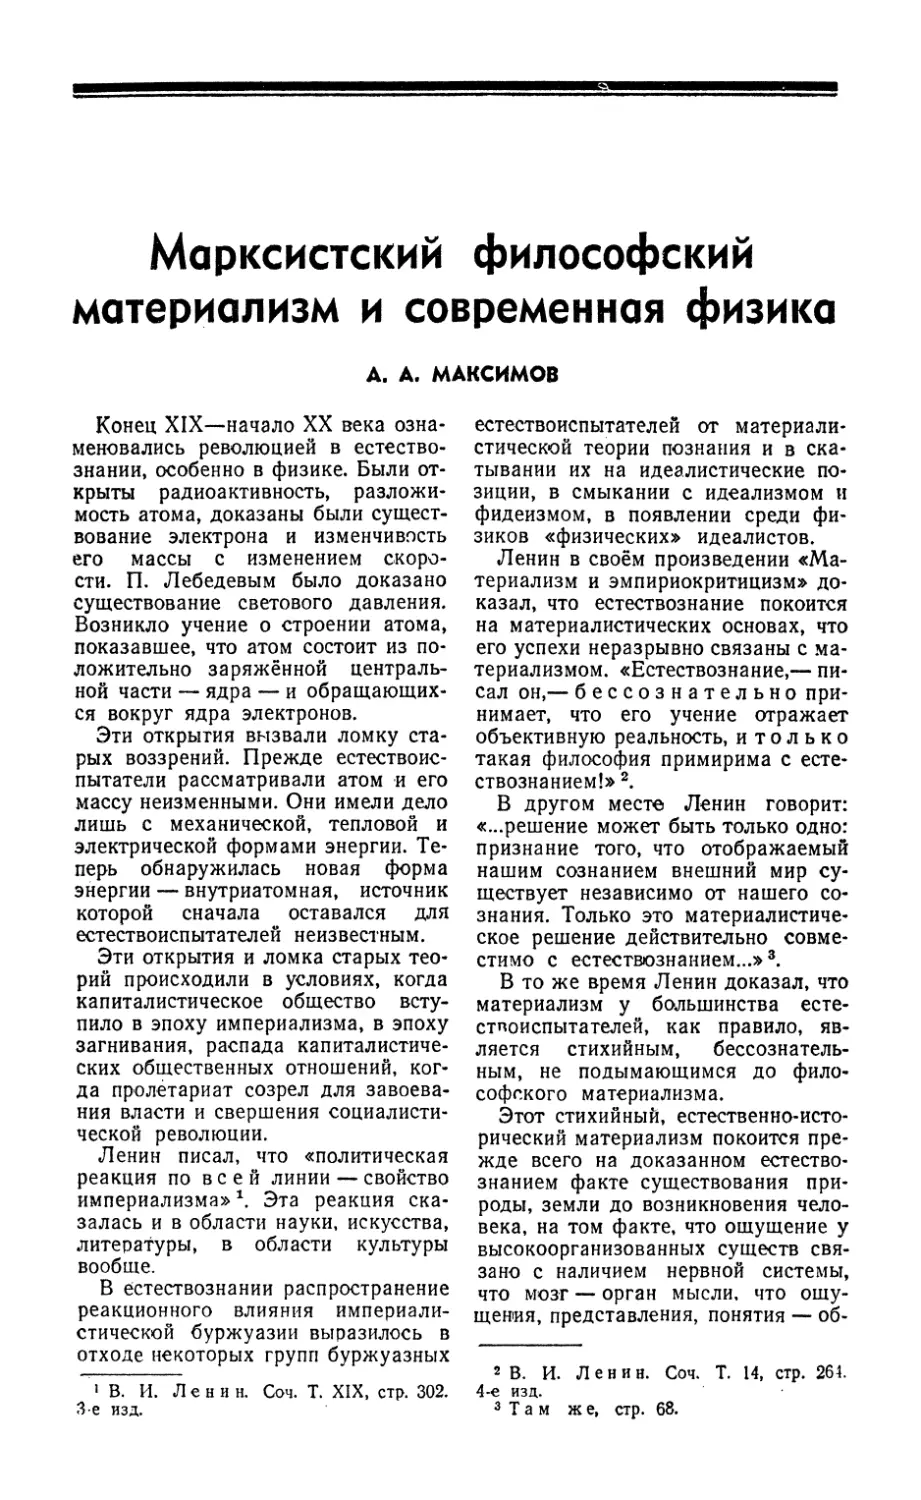 А. А. Максимов — Марксистский философский материализм и современная физика